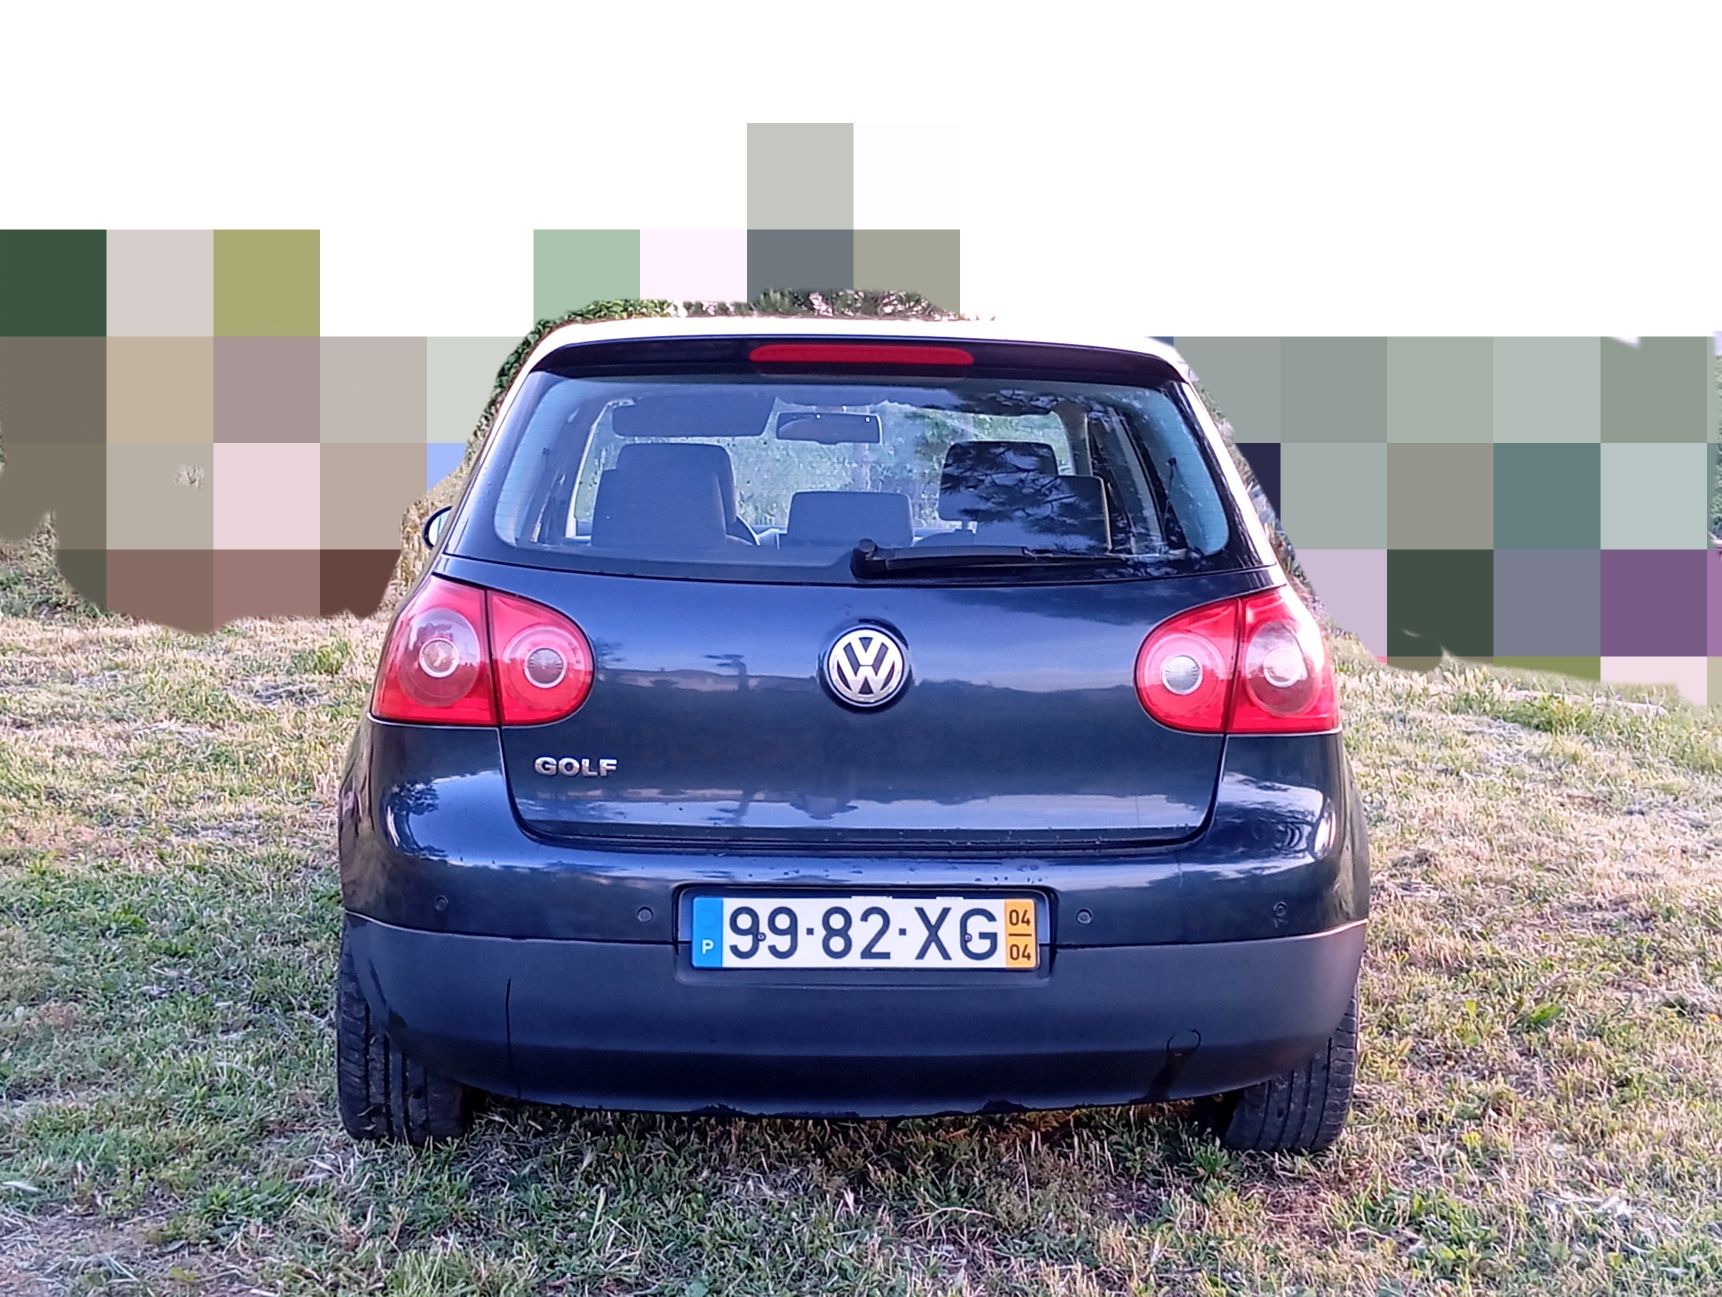 VW golf 1.4 fsi 2004